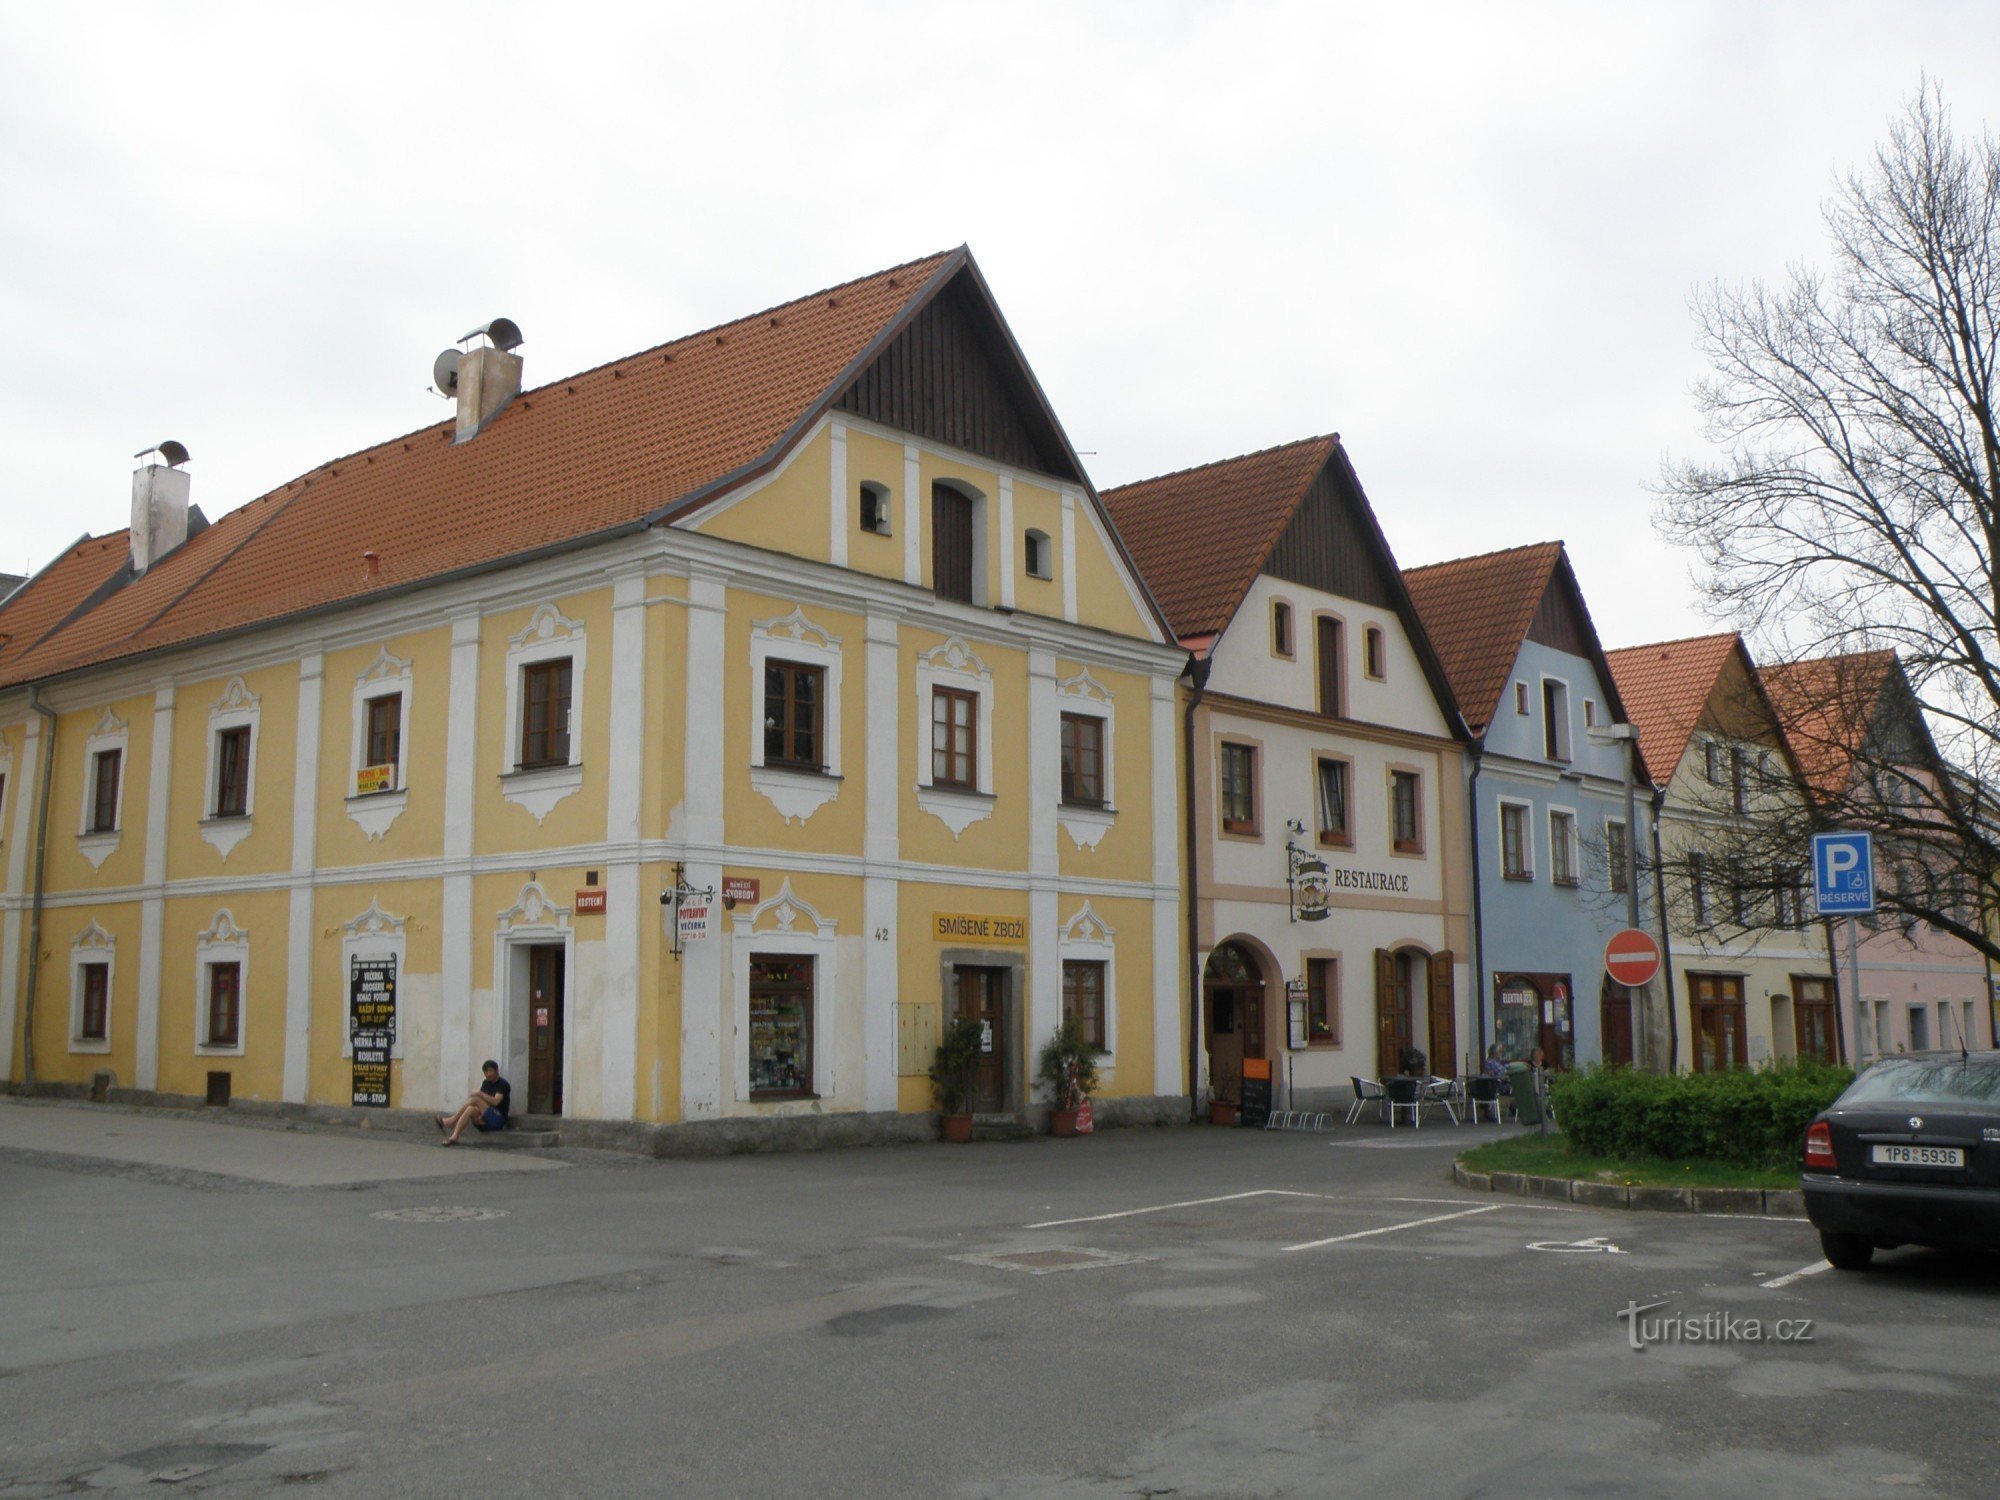 történelmi házak a téren